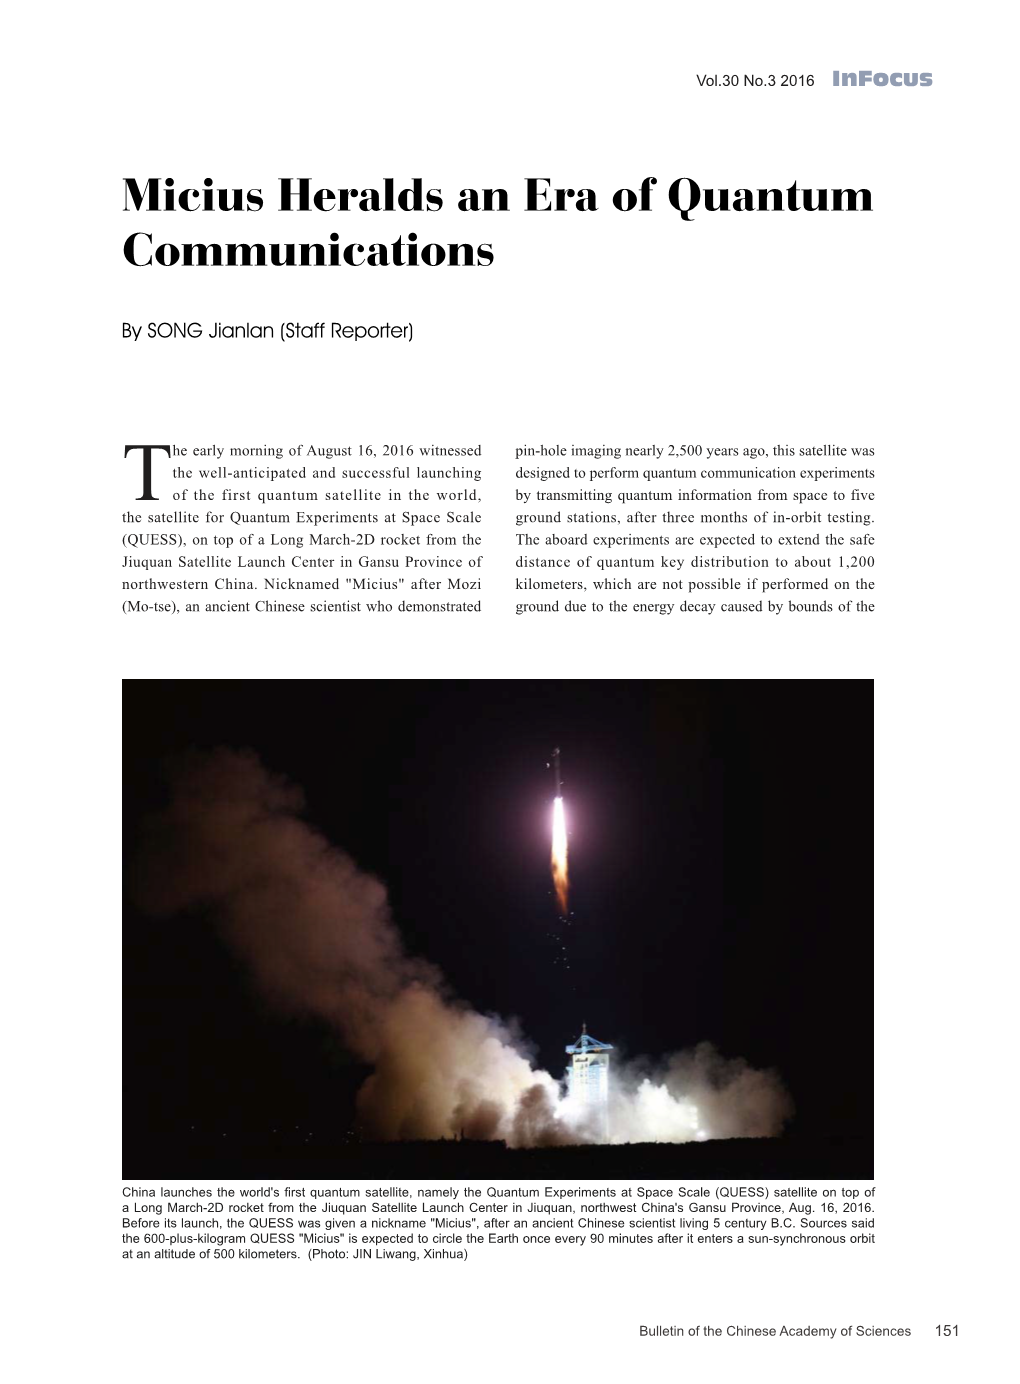 Micius Heralds an Era of Quantum Communications